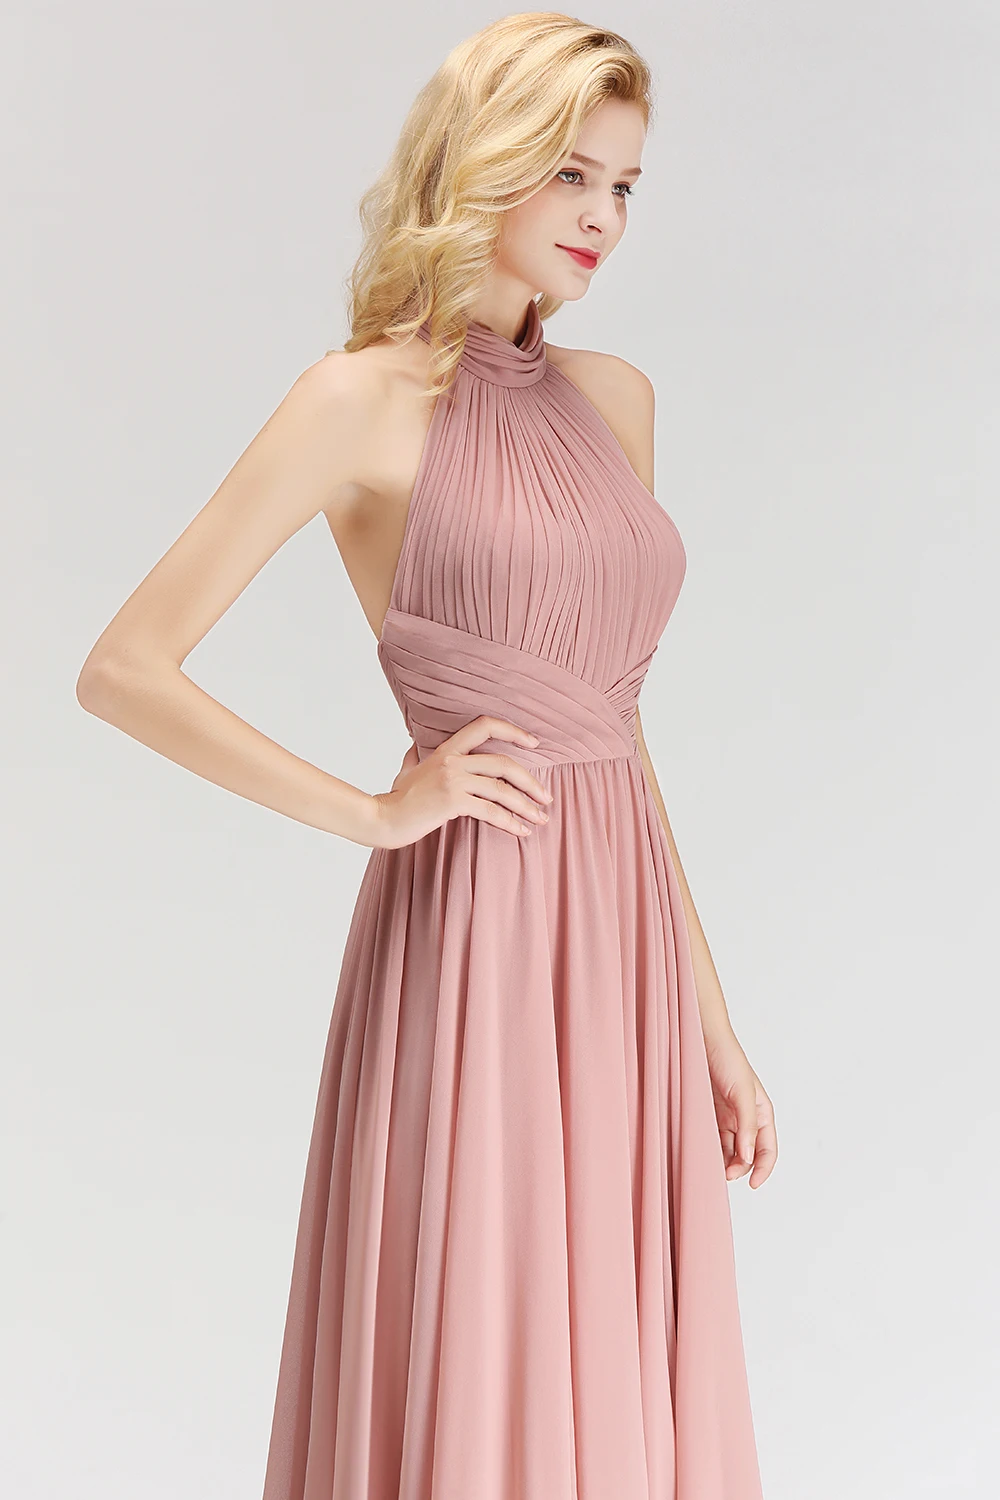 Новое поступление с лямкой через шею Розовый длинное вечернее платье, пикантное с низким вырезом на спине бюст ДРАПИРОВАННОЕ вечернее элегантное шифоновое Платья для вечеринок